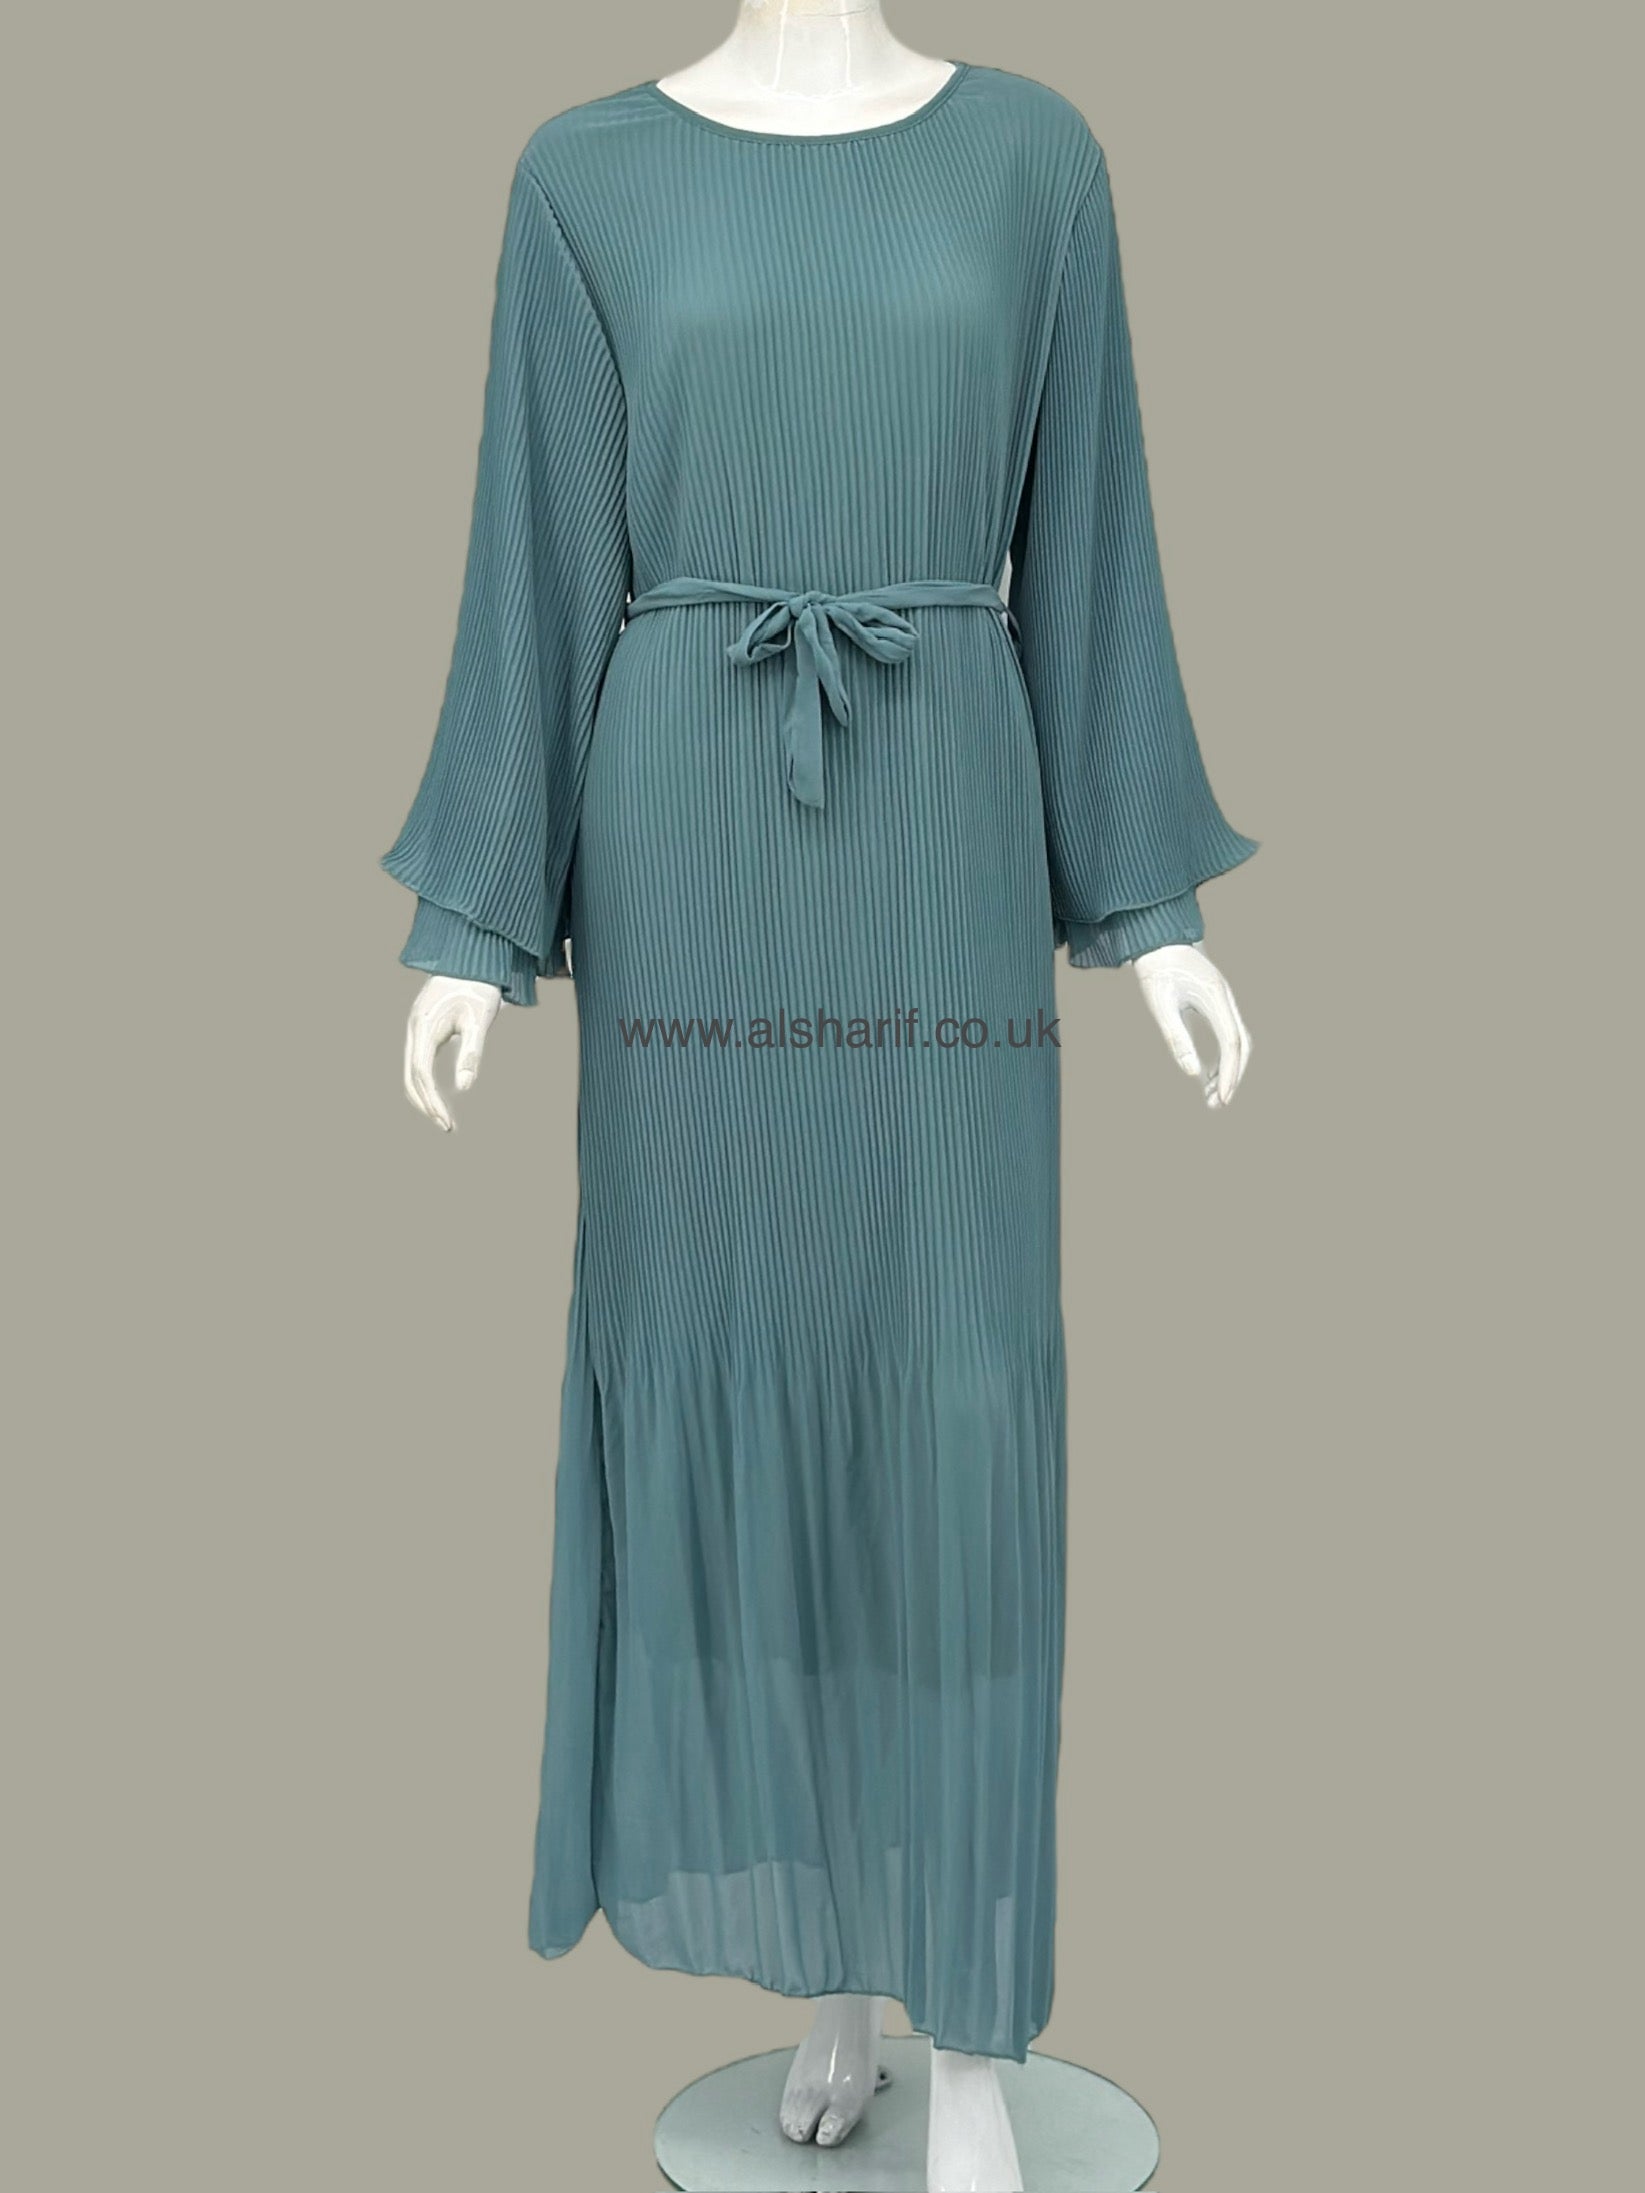 Pleated Chiffon Dress - D78